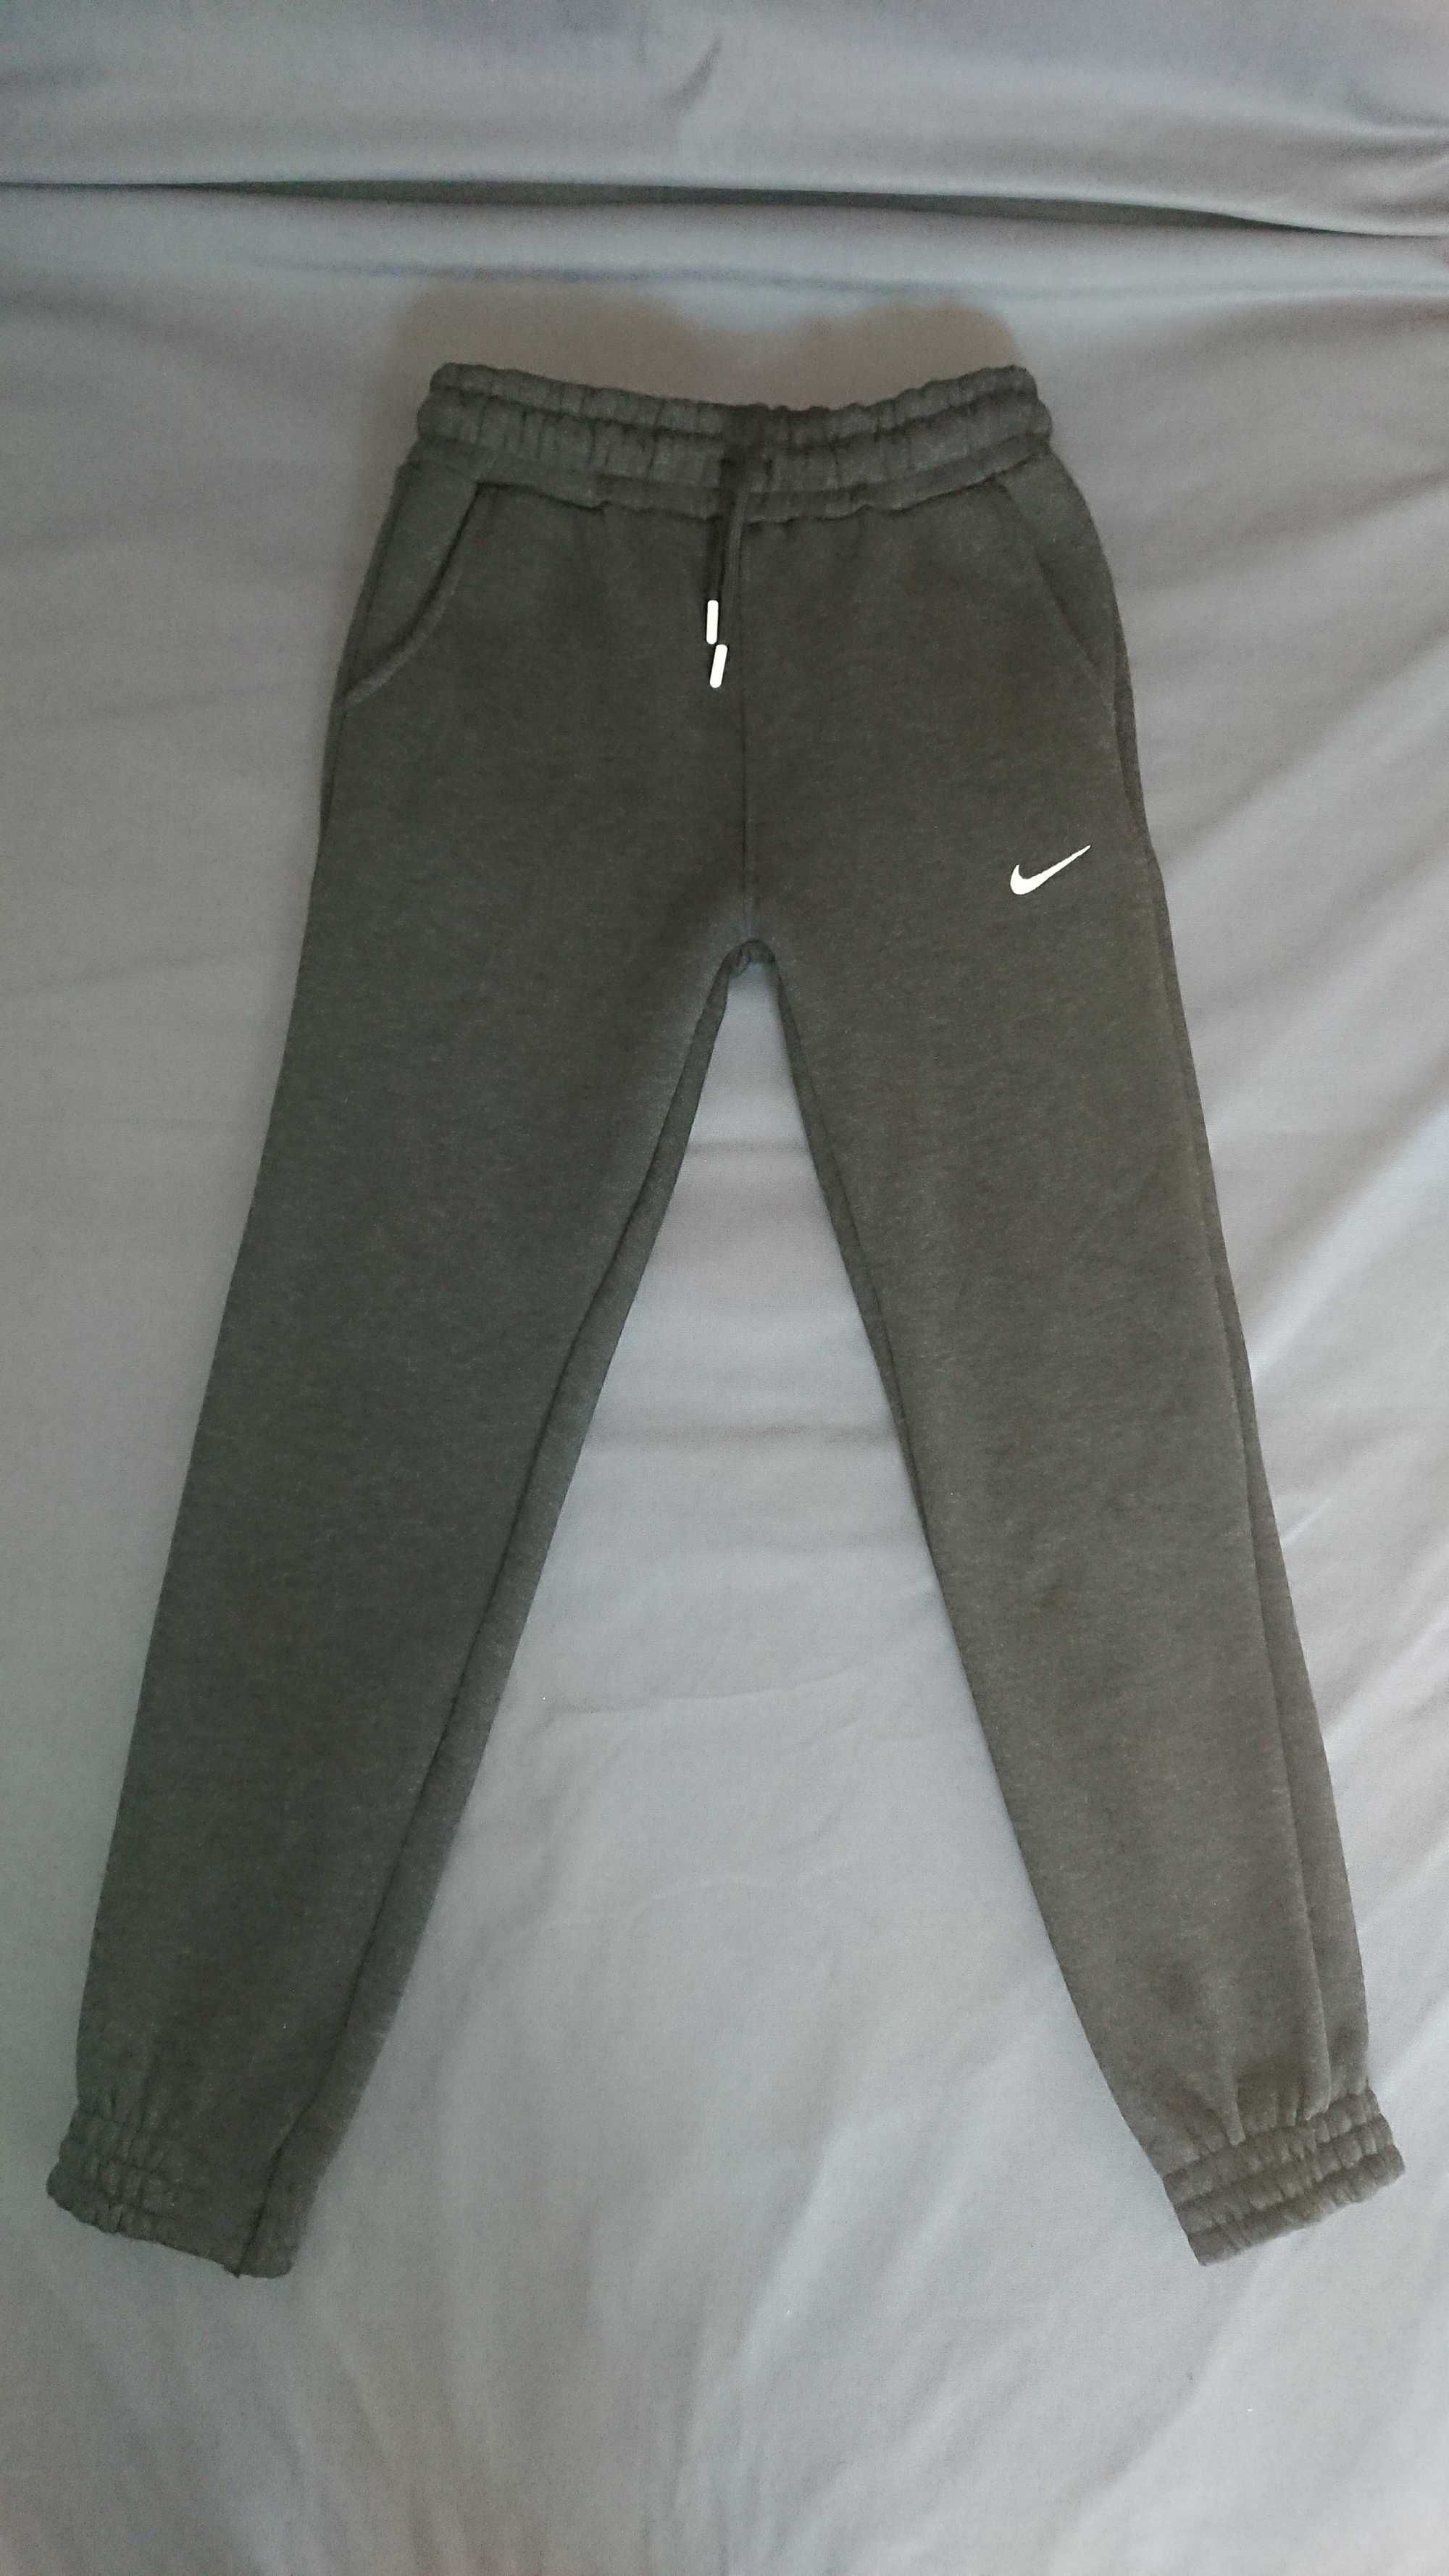 Spodnie bawełniane dresowe Nike rozmiar S bawełniaki dresy